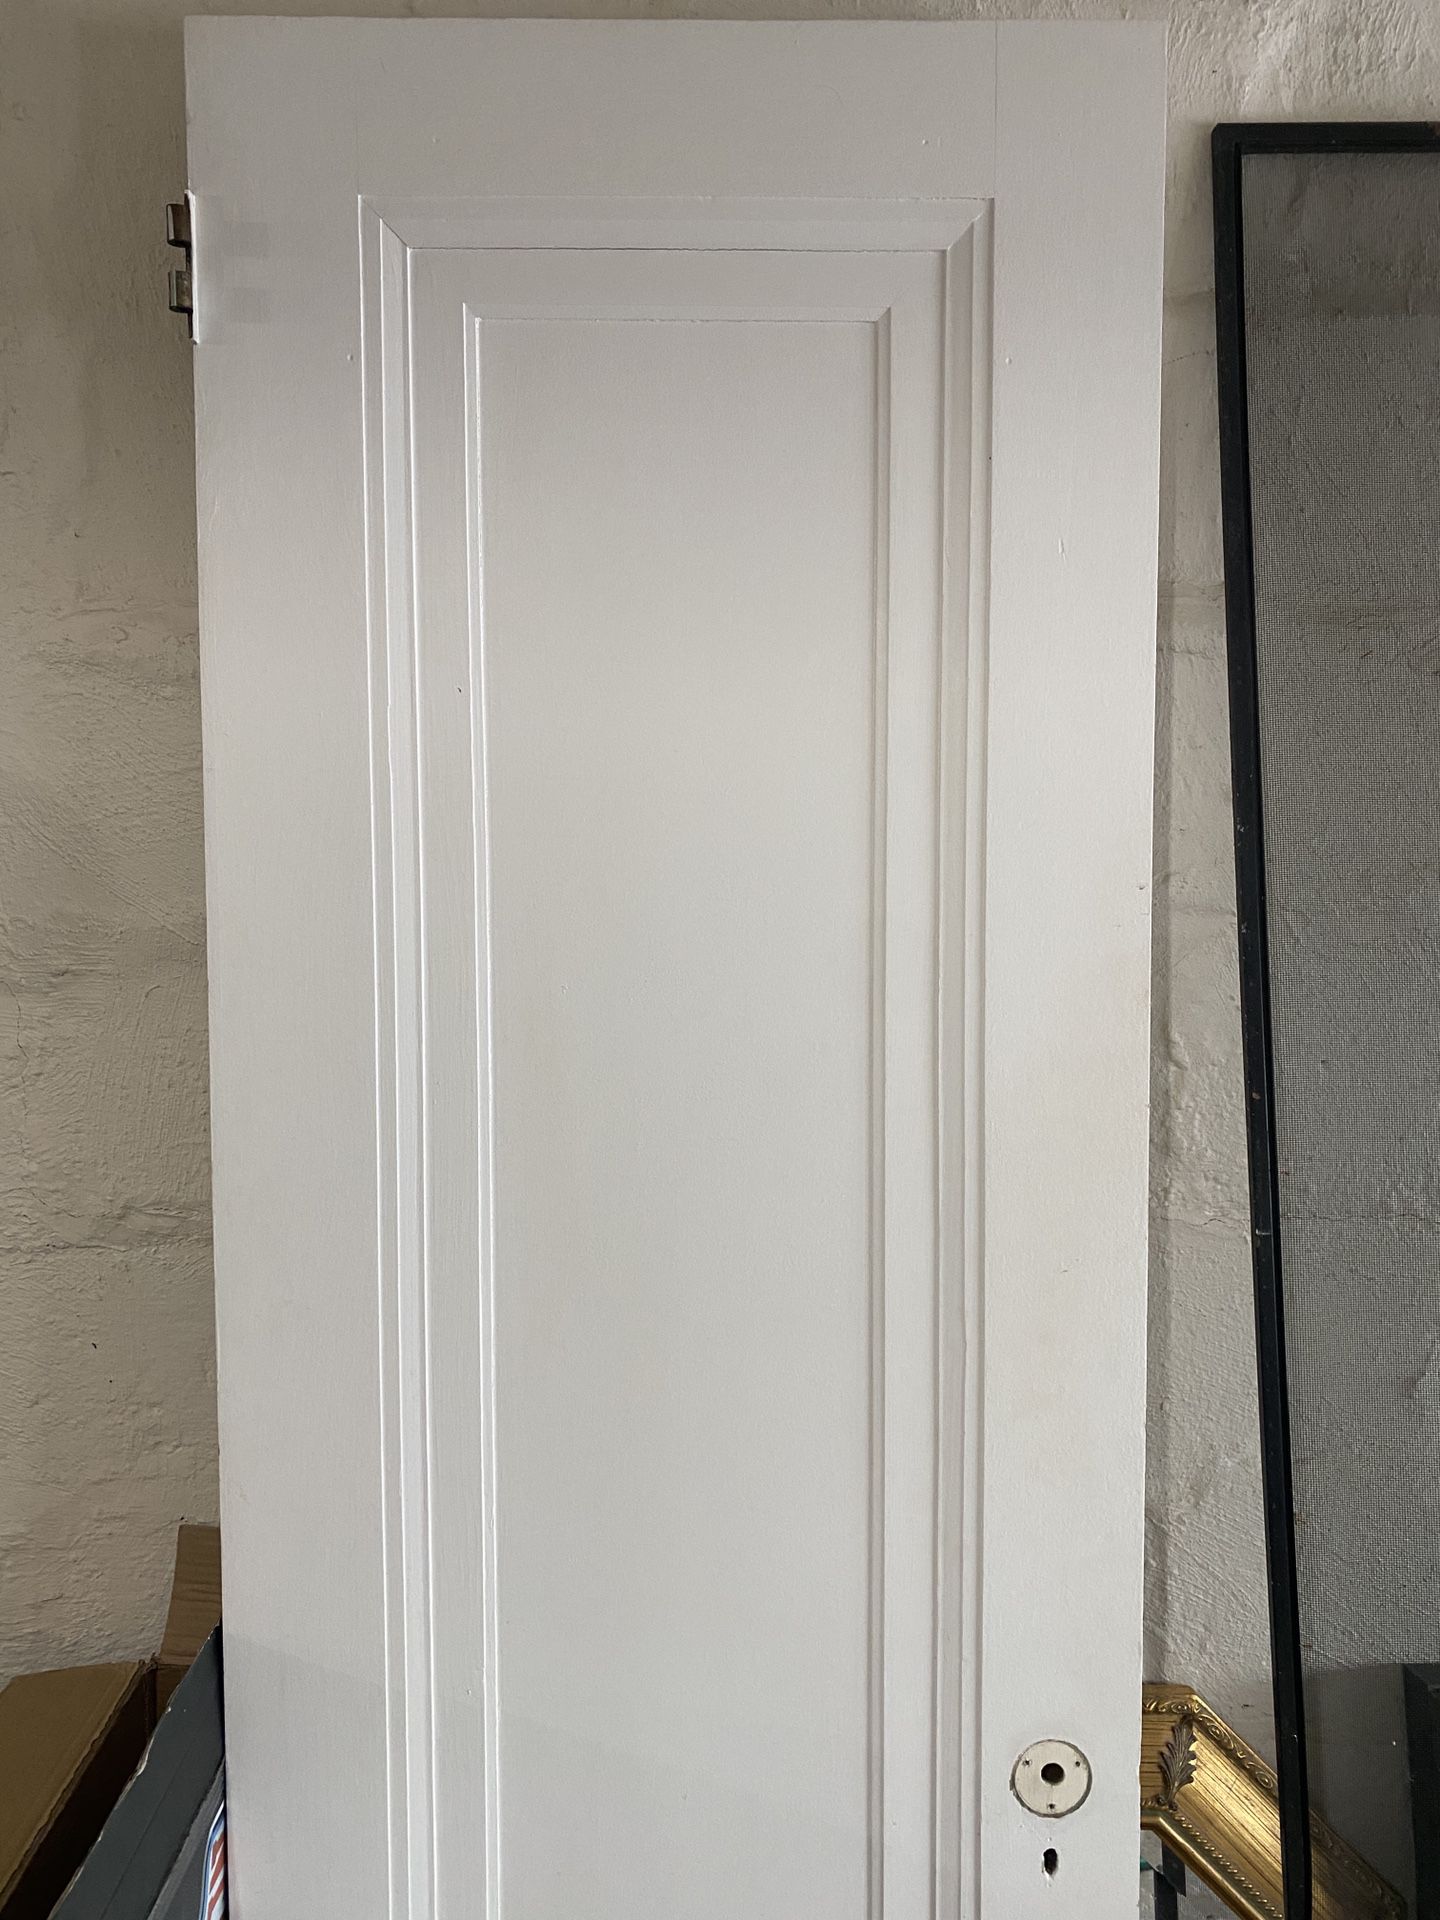 Solid wood door (80” x 24”)